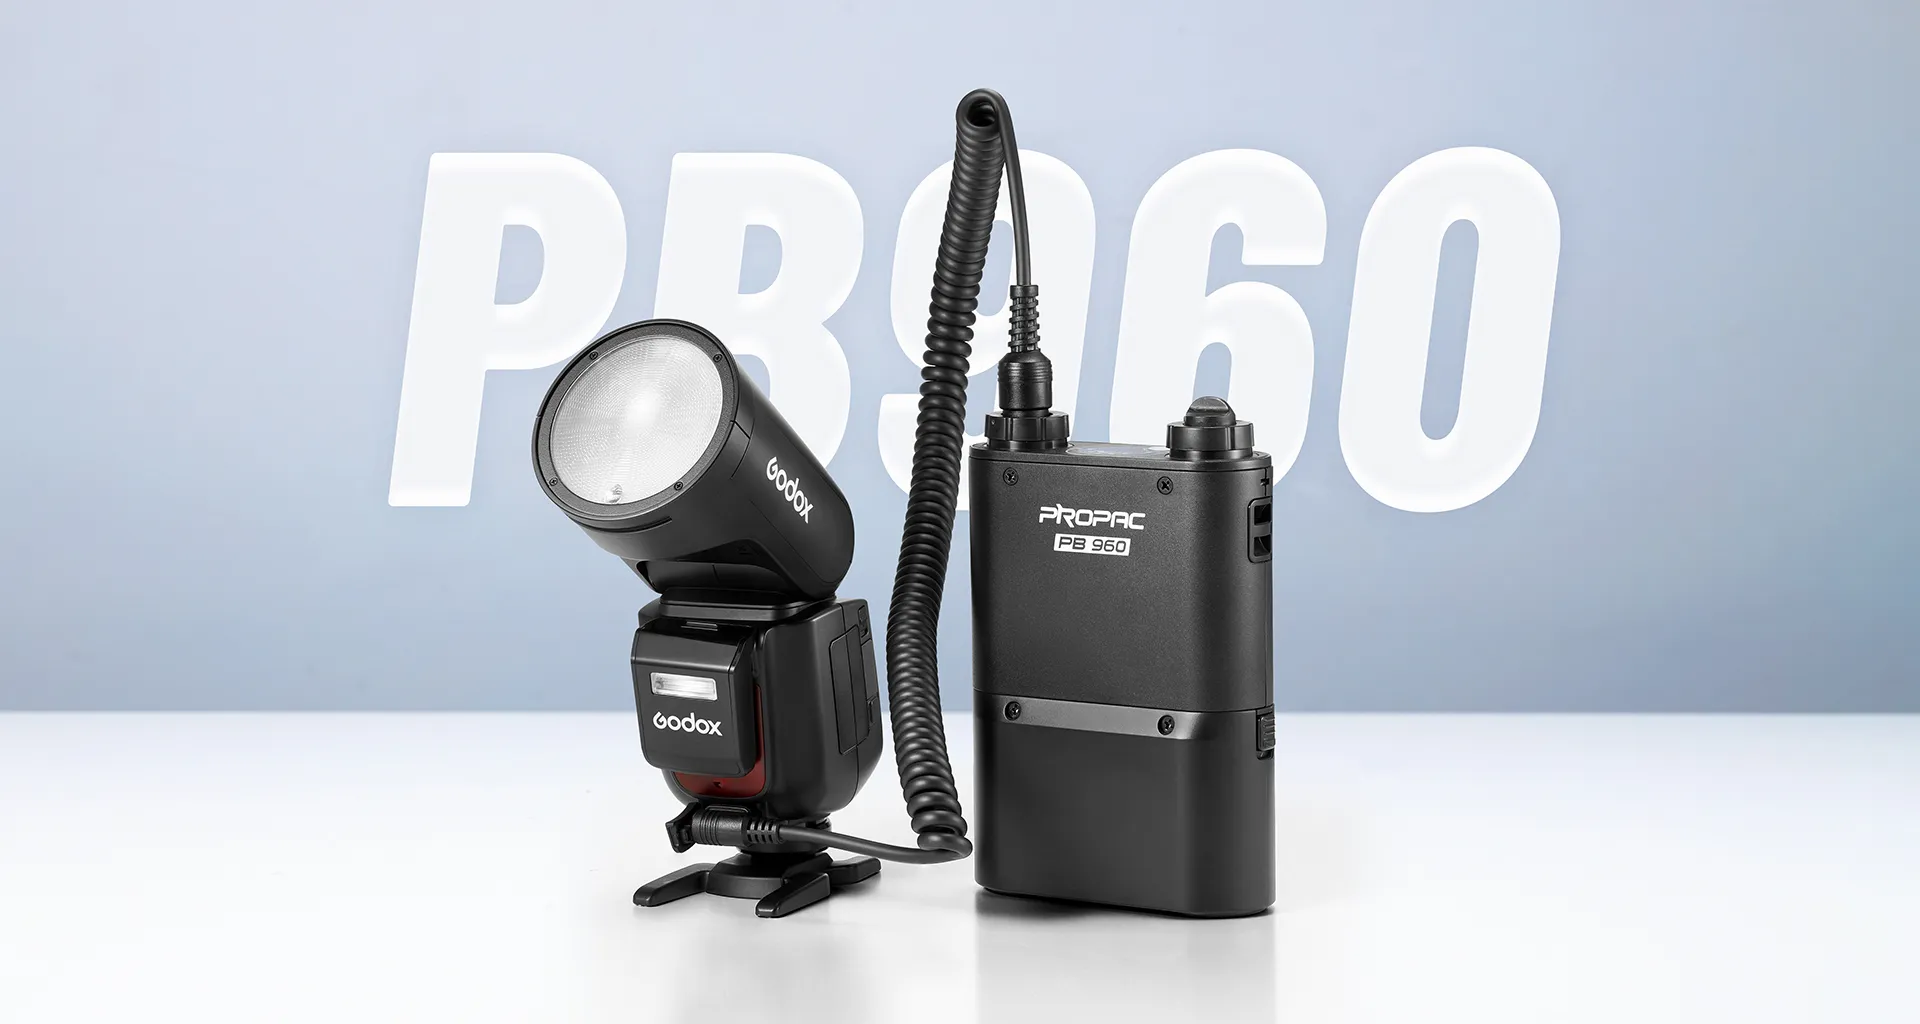 Godox V1 Pro chính thức ra mắt với đèn phụ có thể tháo rời